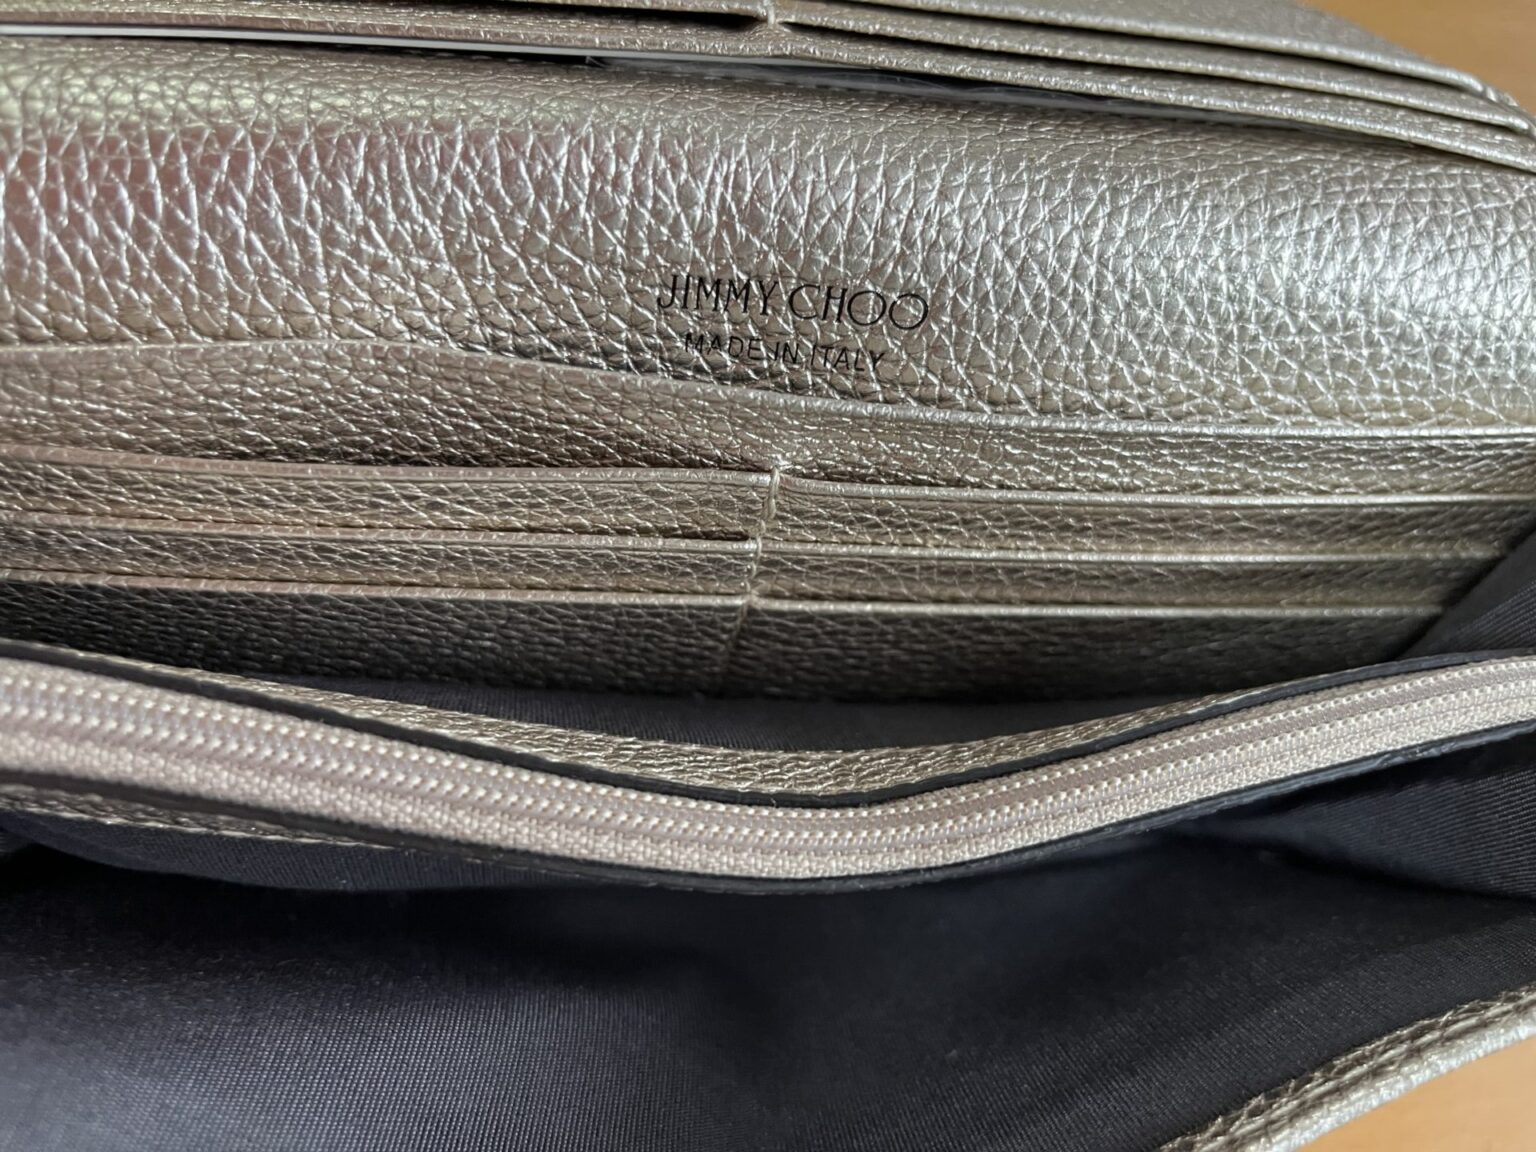 ジミーチュウの財布をダサいと思ってた私が財布を買った理由 - まいぴブログ